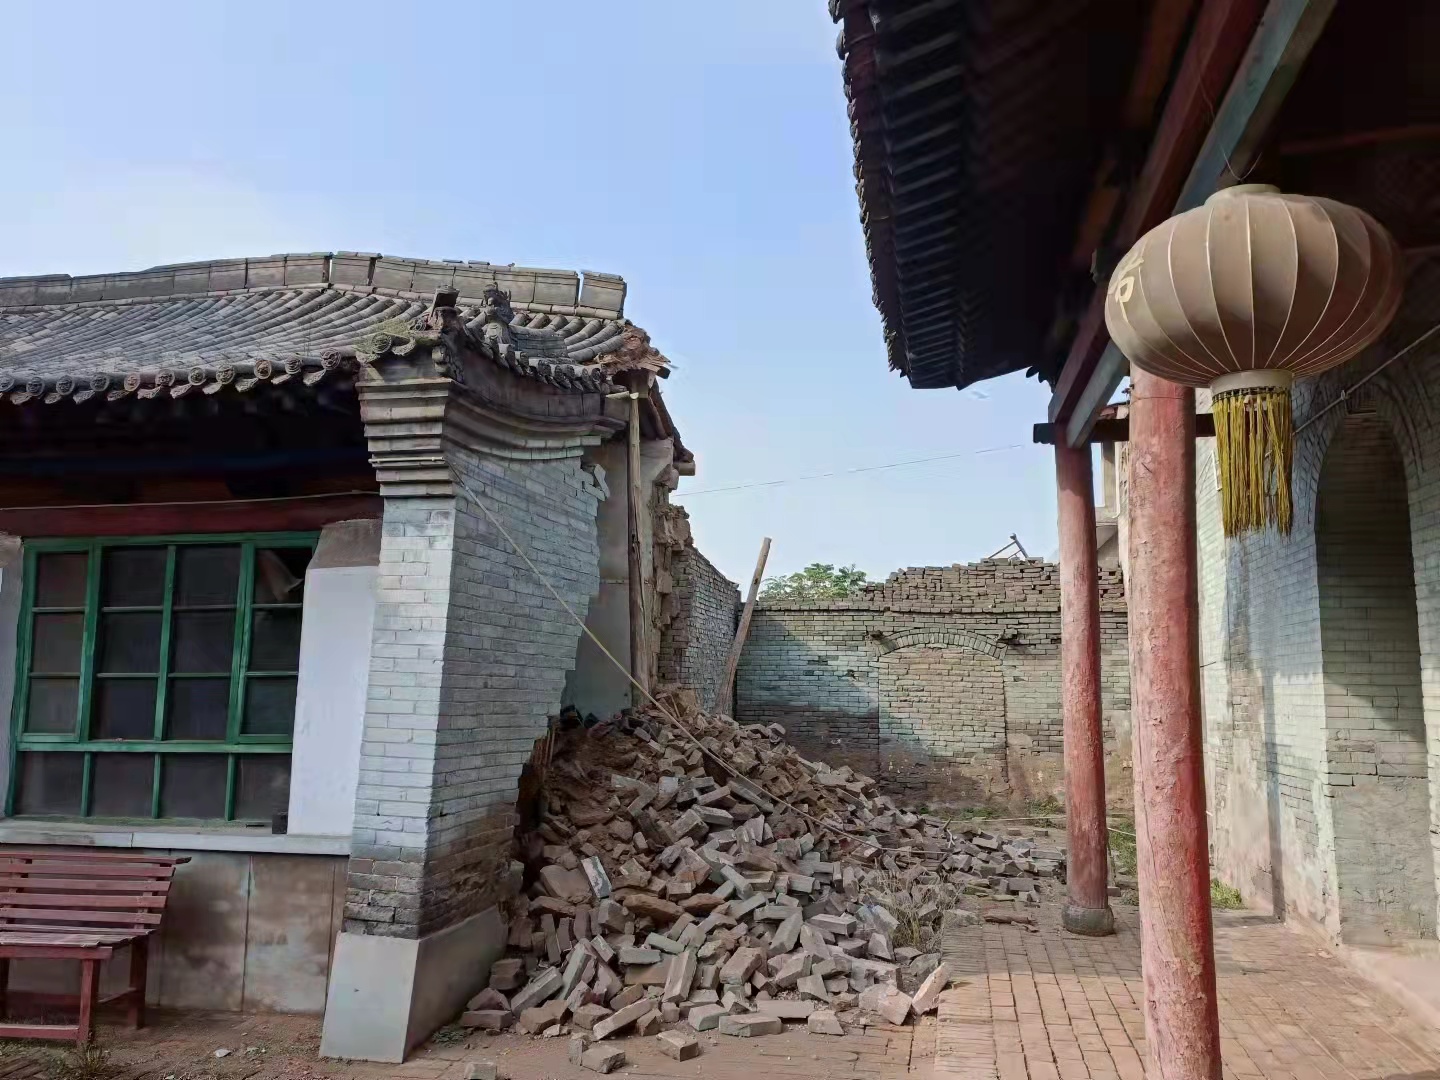 平遥县某古村一佛堂配殿坍塌。新京报记者 吴采倩 摄